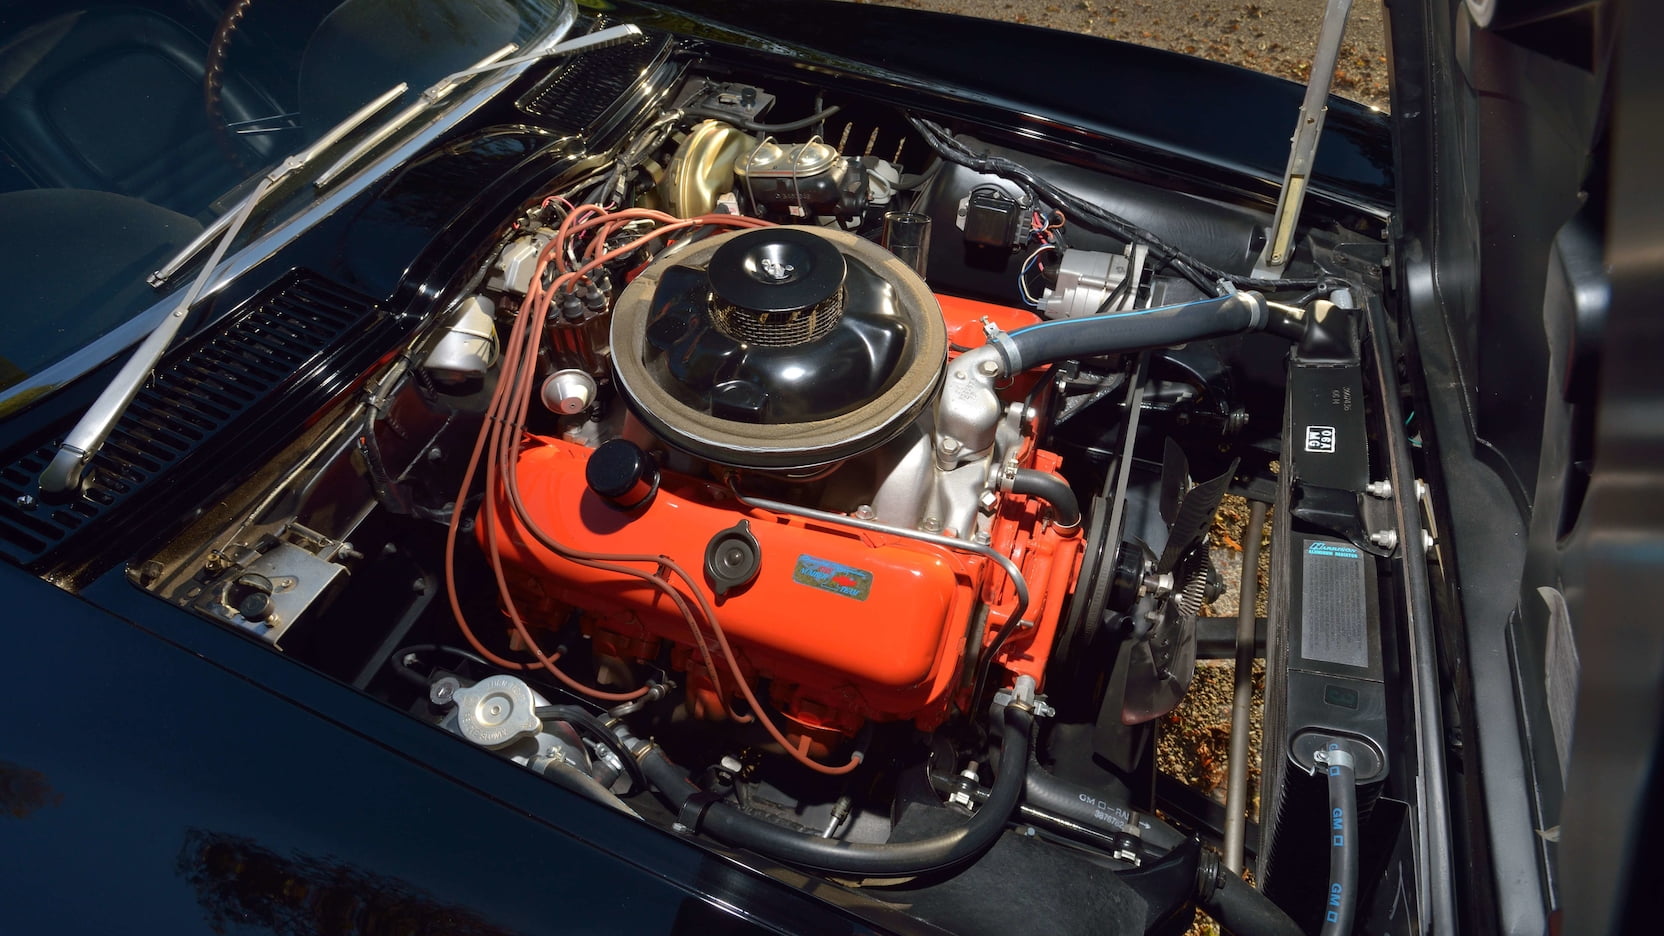 1967 Chevrolet Corvette L88 Convertible - First RPO L88 Built